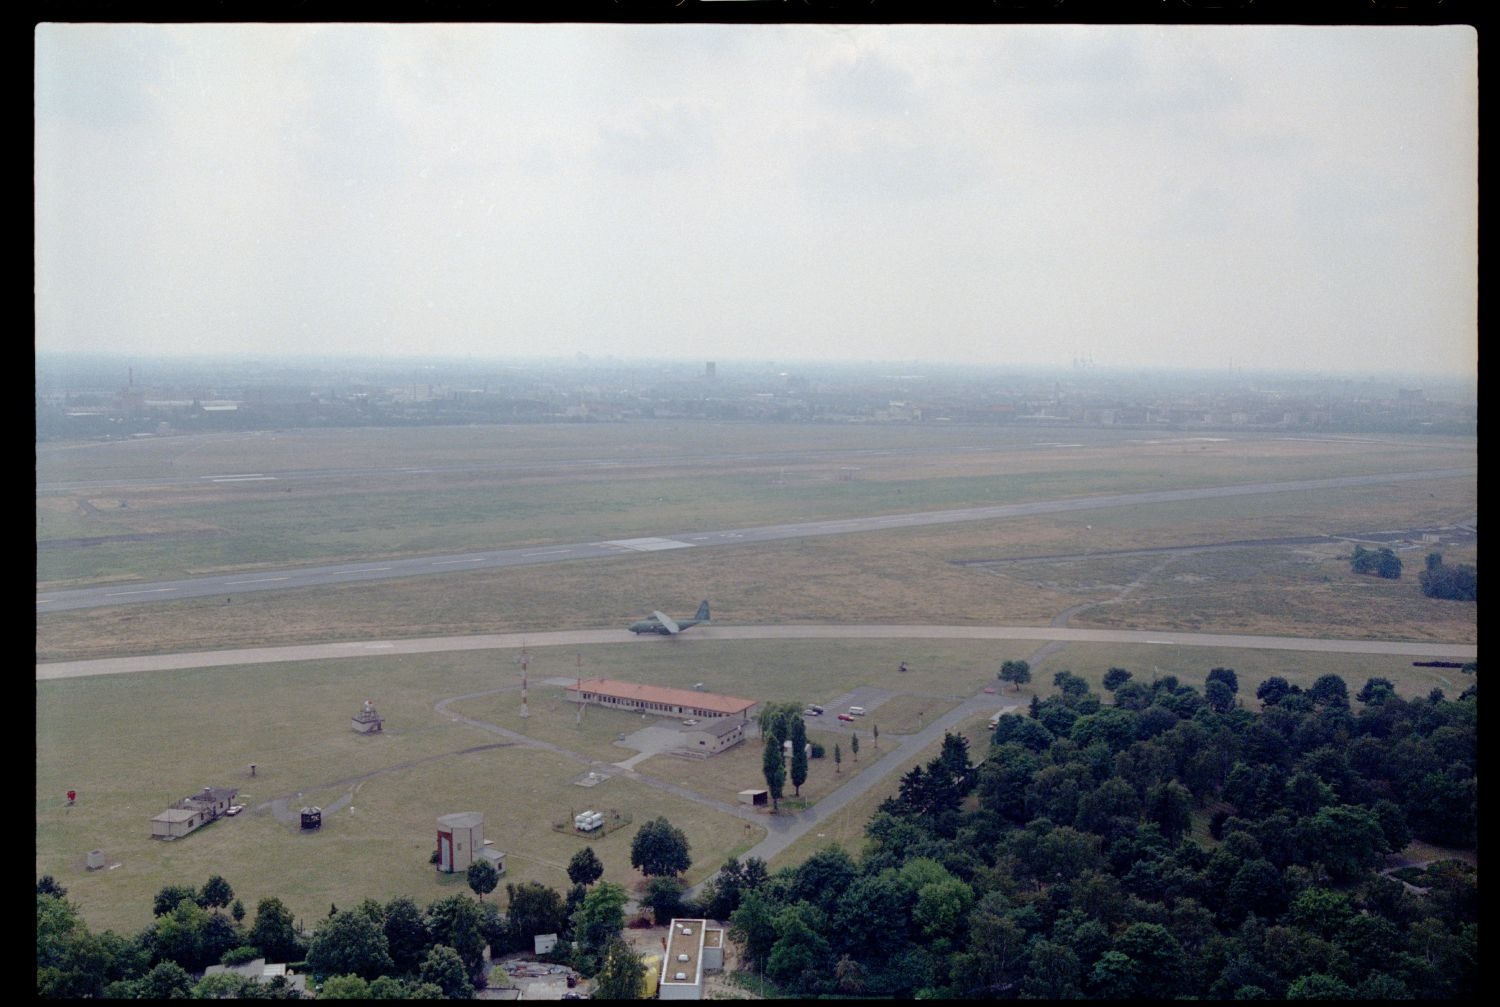 Fotografie: Hubschrauberflug des Aviation Detachment über Berlin (AlliiertenMuseum/U.S. Army Photograph Public Domain Mark)